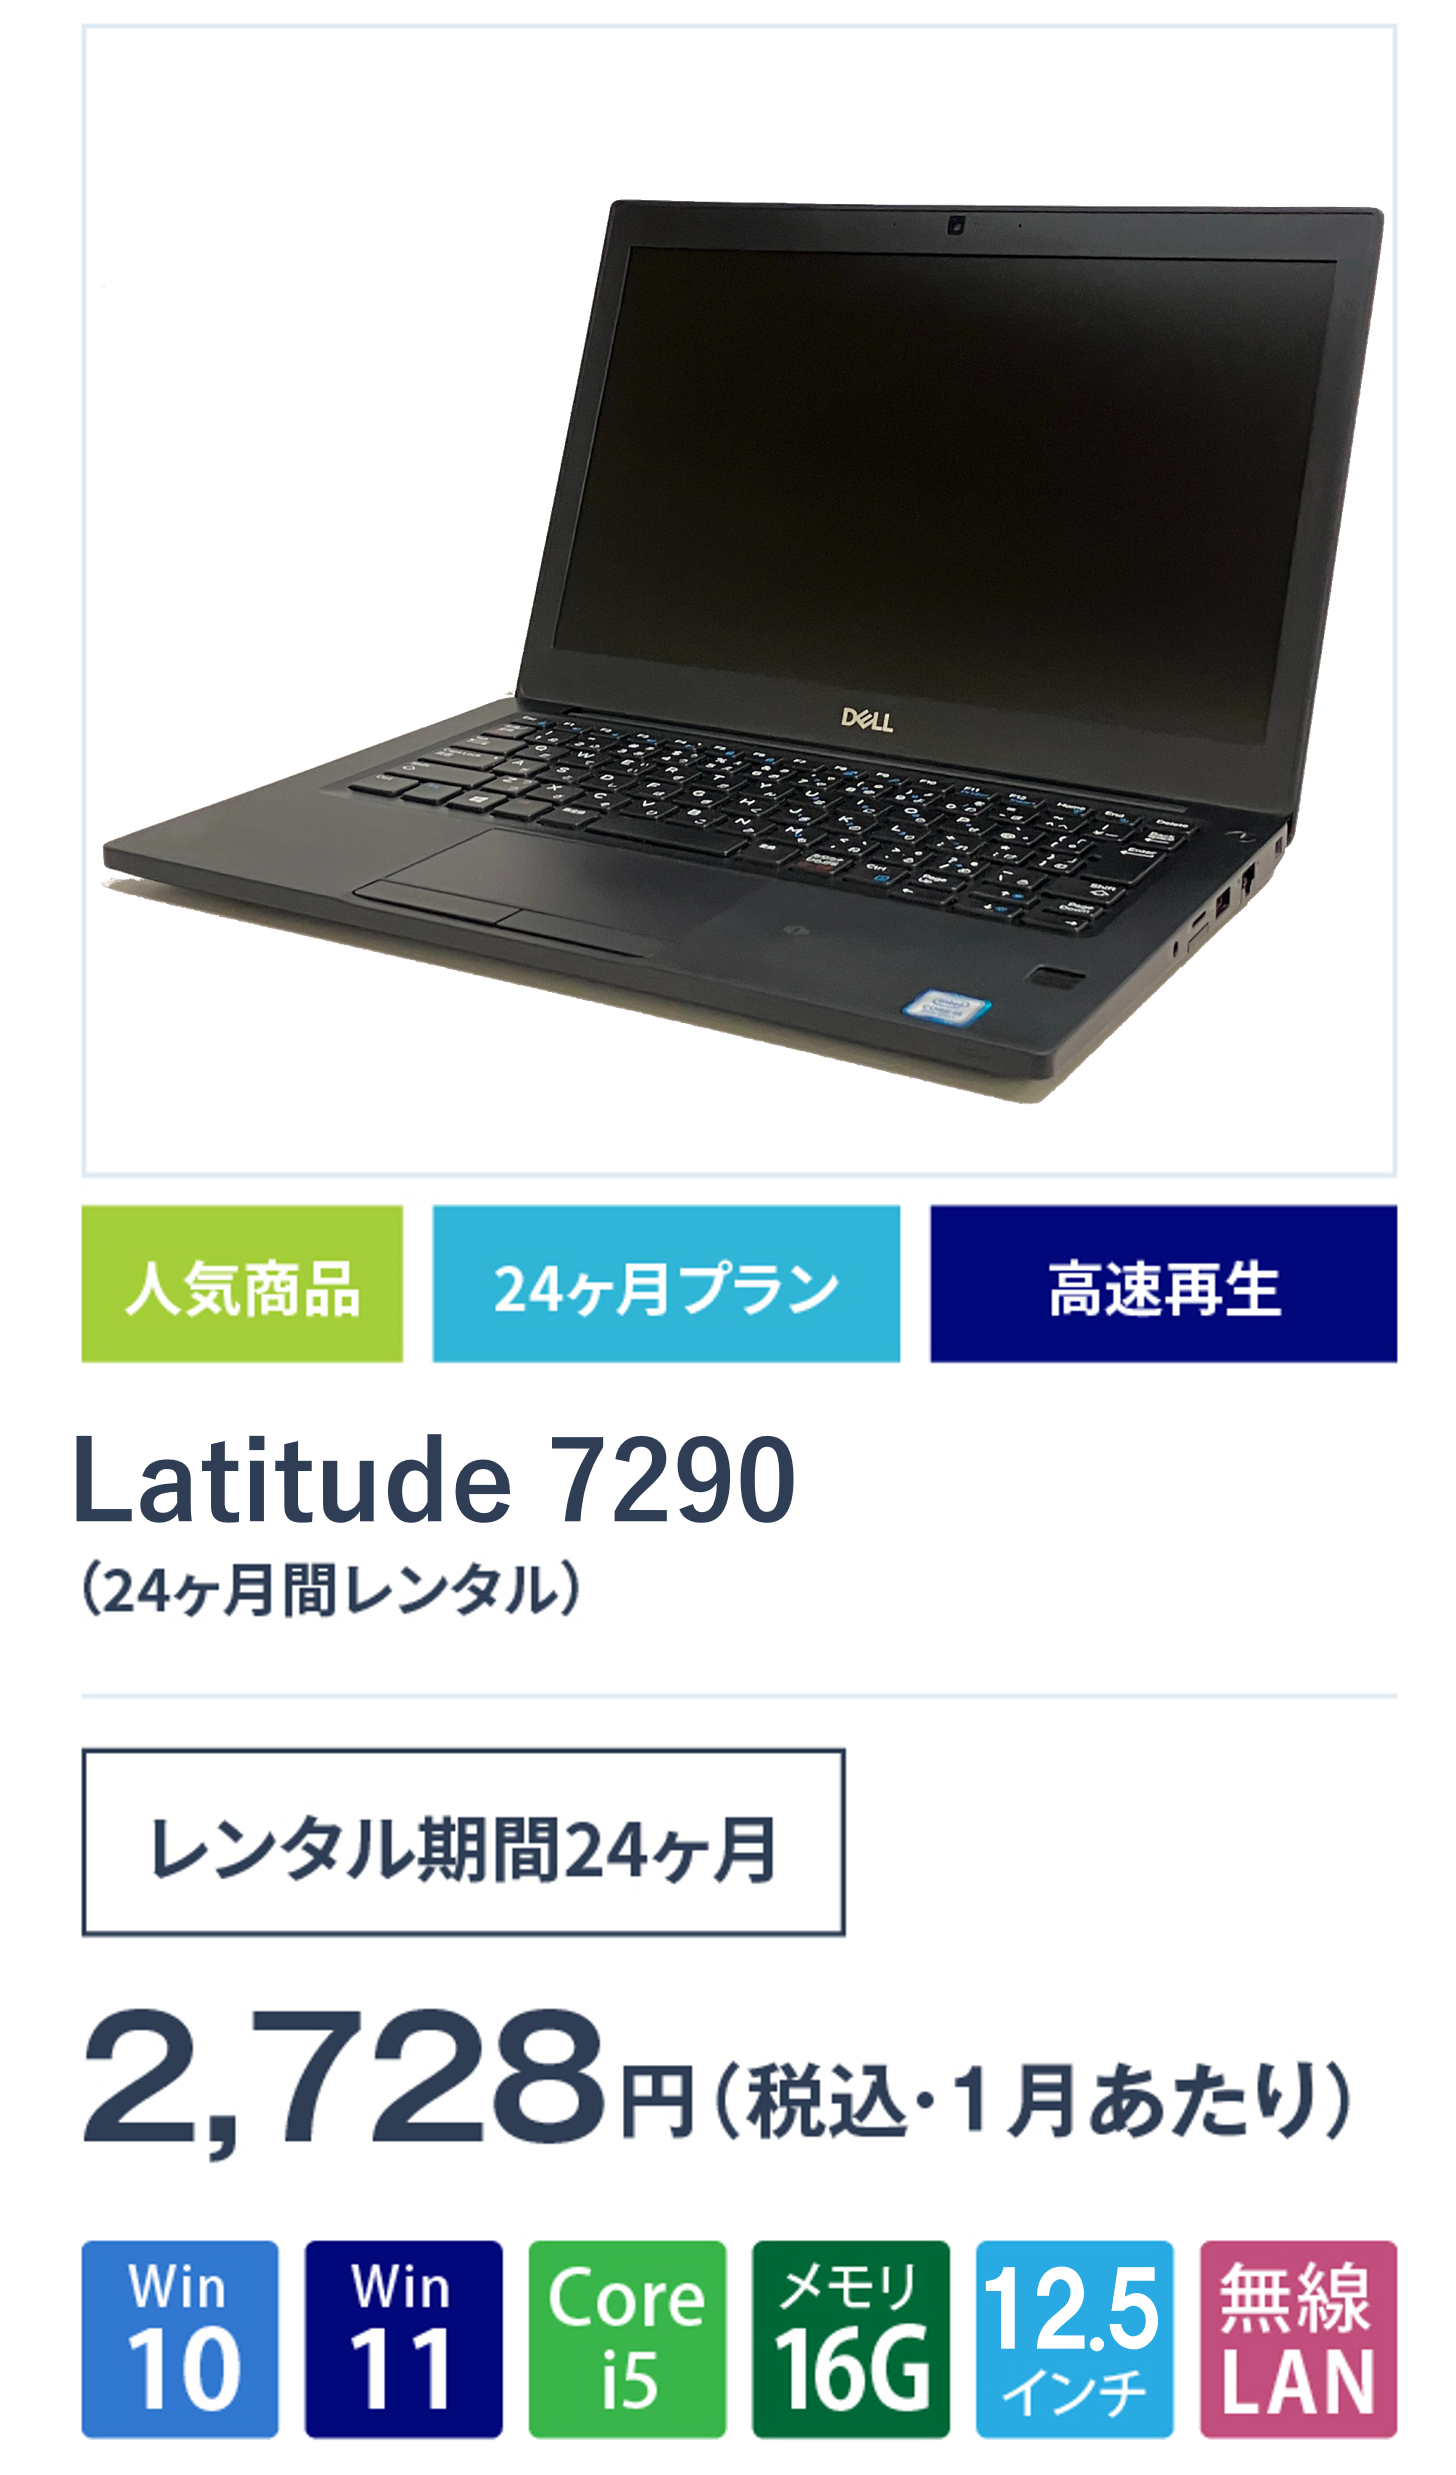 Latitude7290(24ヵ月間レンタル)